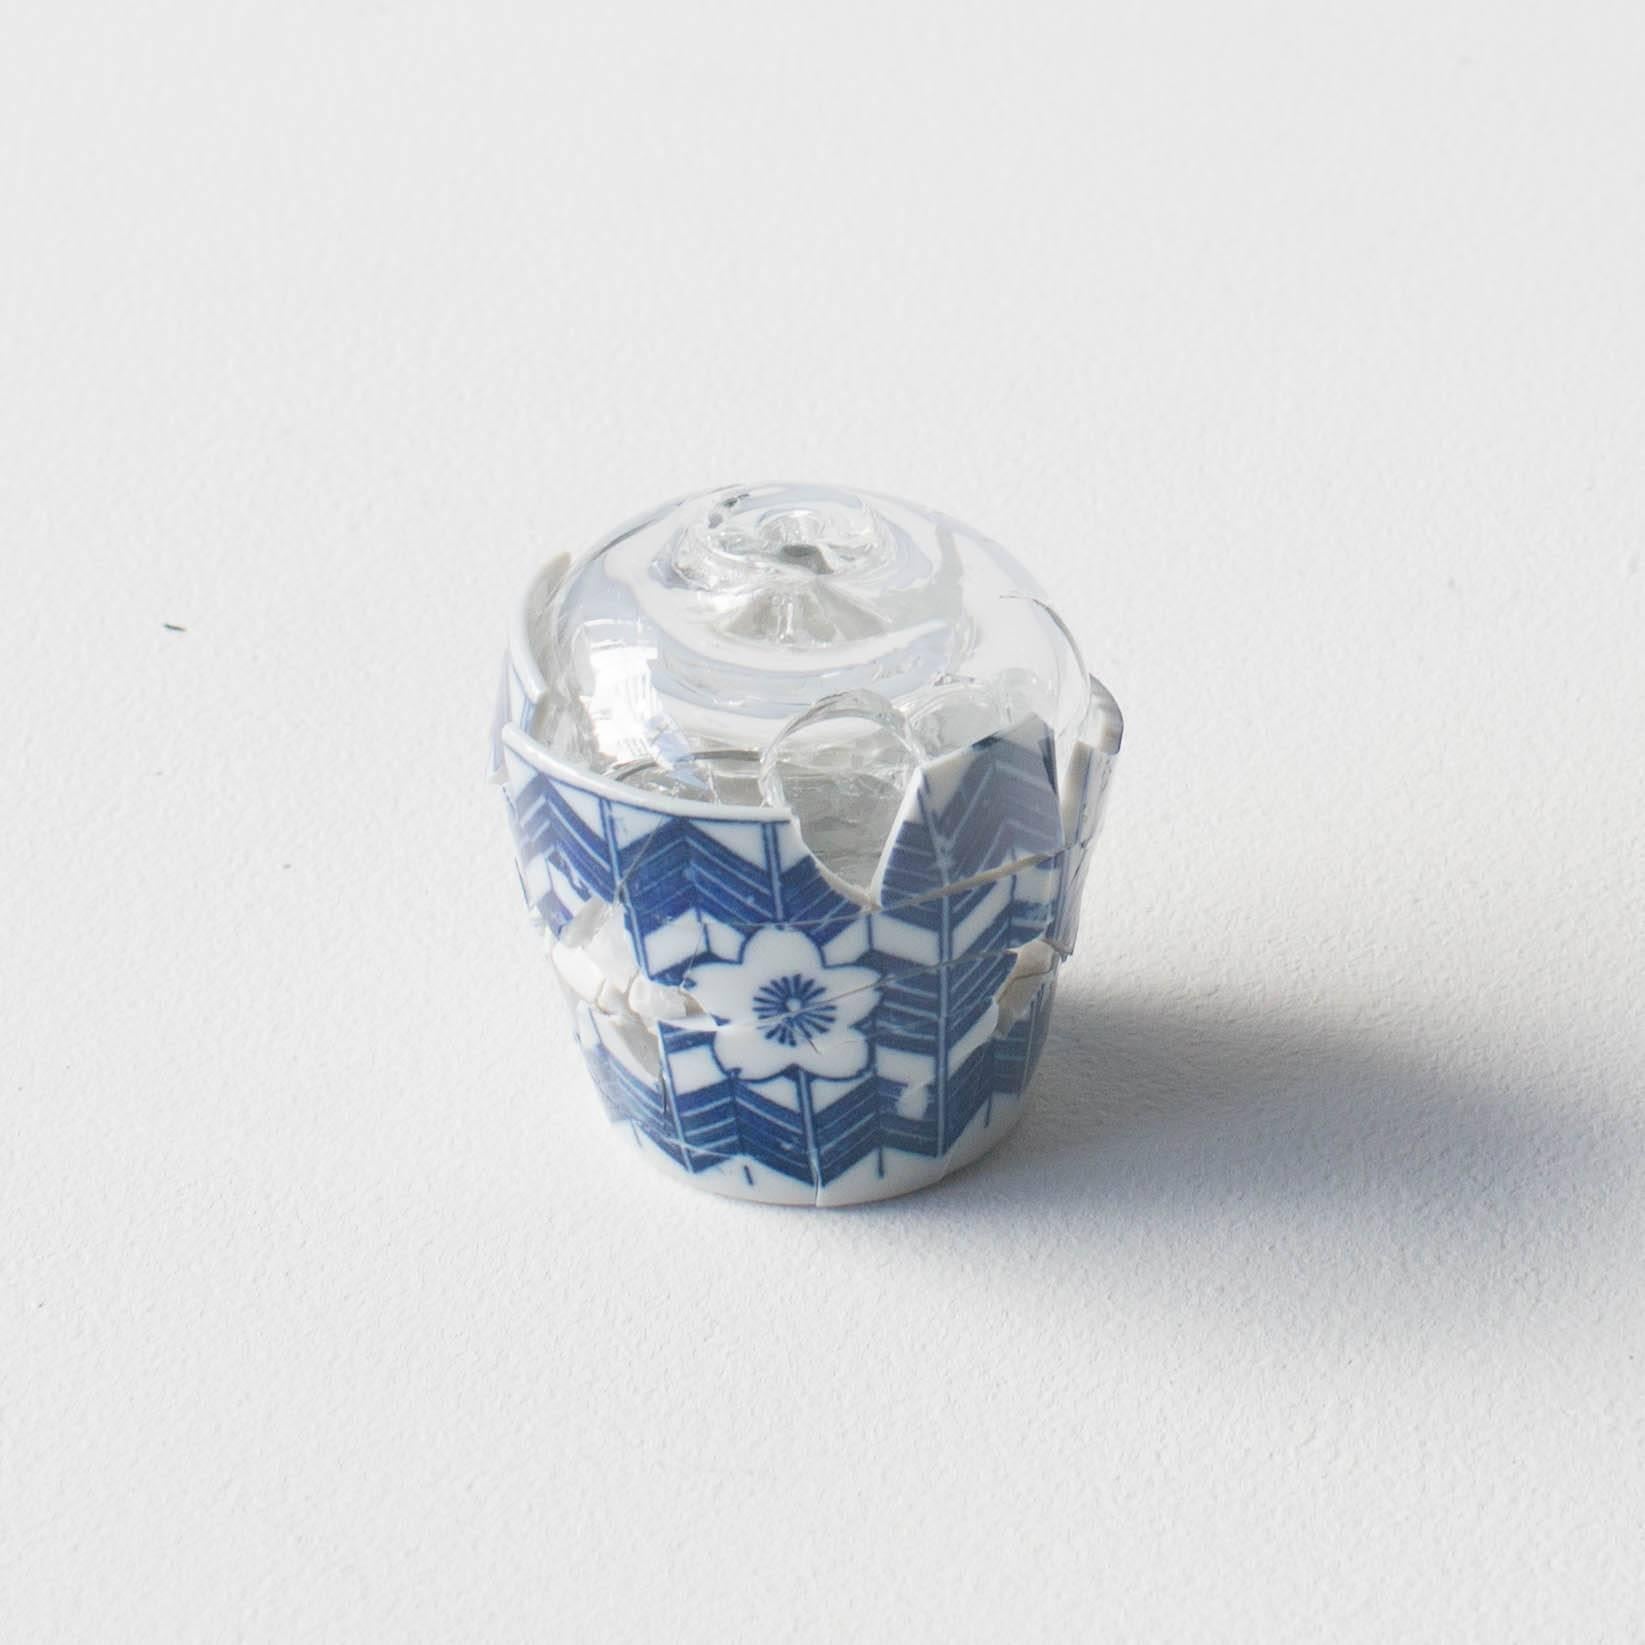 Antique bup de saké japonais en céramique cassée, réparée avec du verre. Les éclats cassés sont soudés par le verre.
Ce travail est une étude de la relation entre l'objet et la décoration.
Le sujet est Destruction et coexistence.
Impossible de